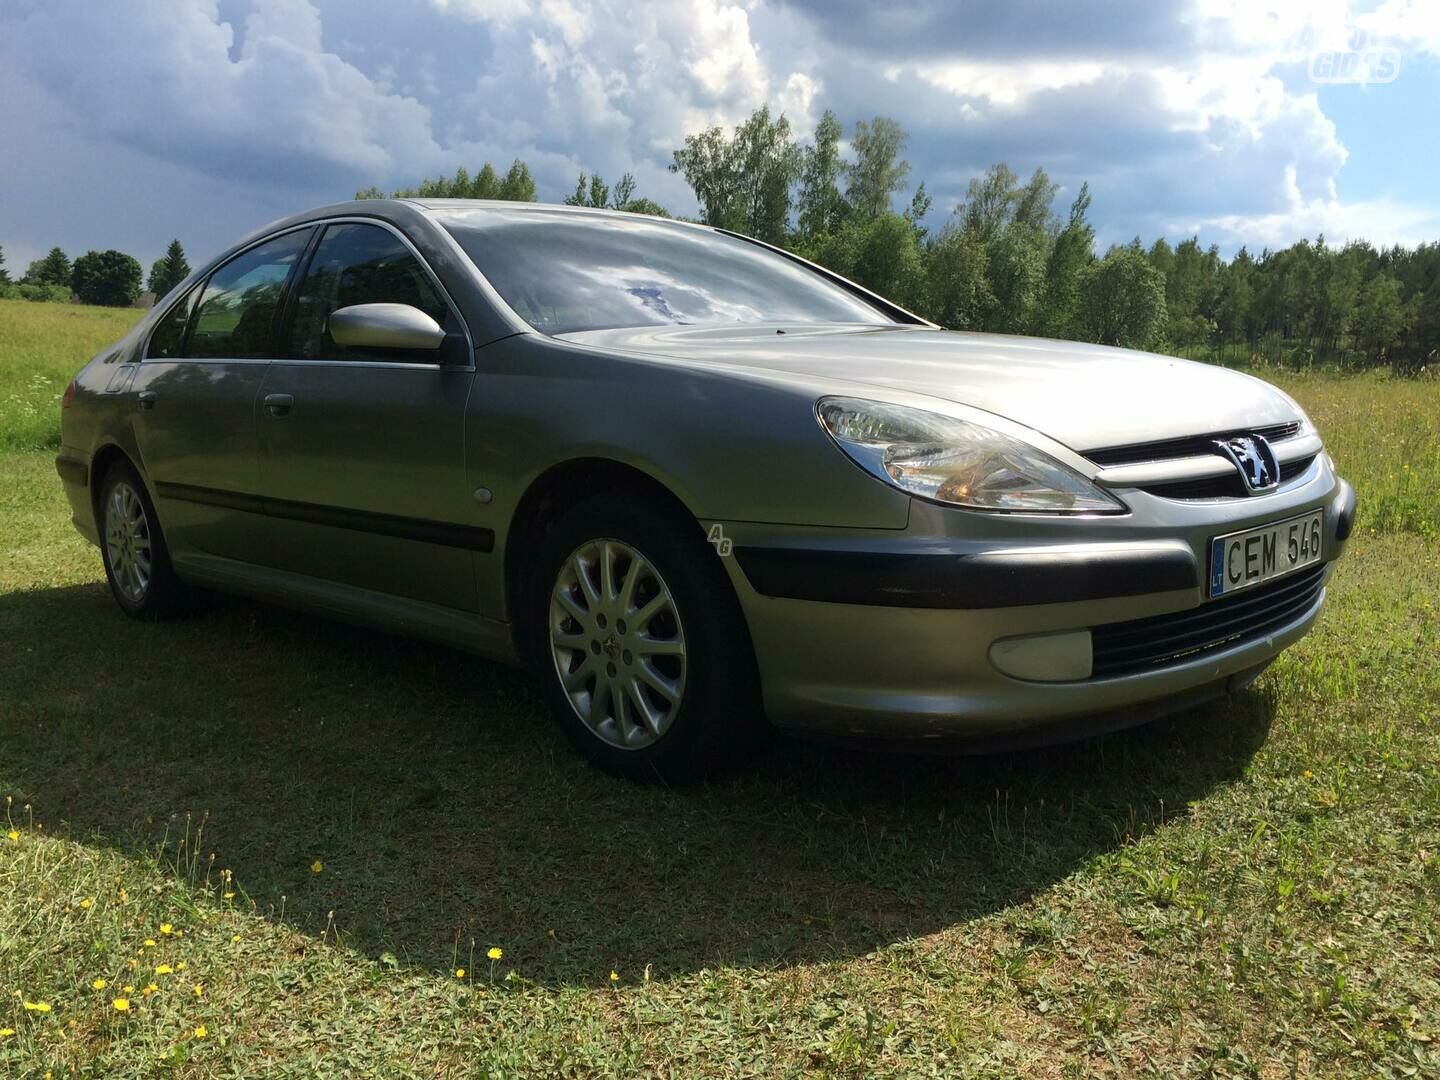 Peugeot 607 HDI 2001 m